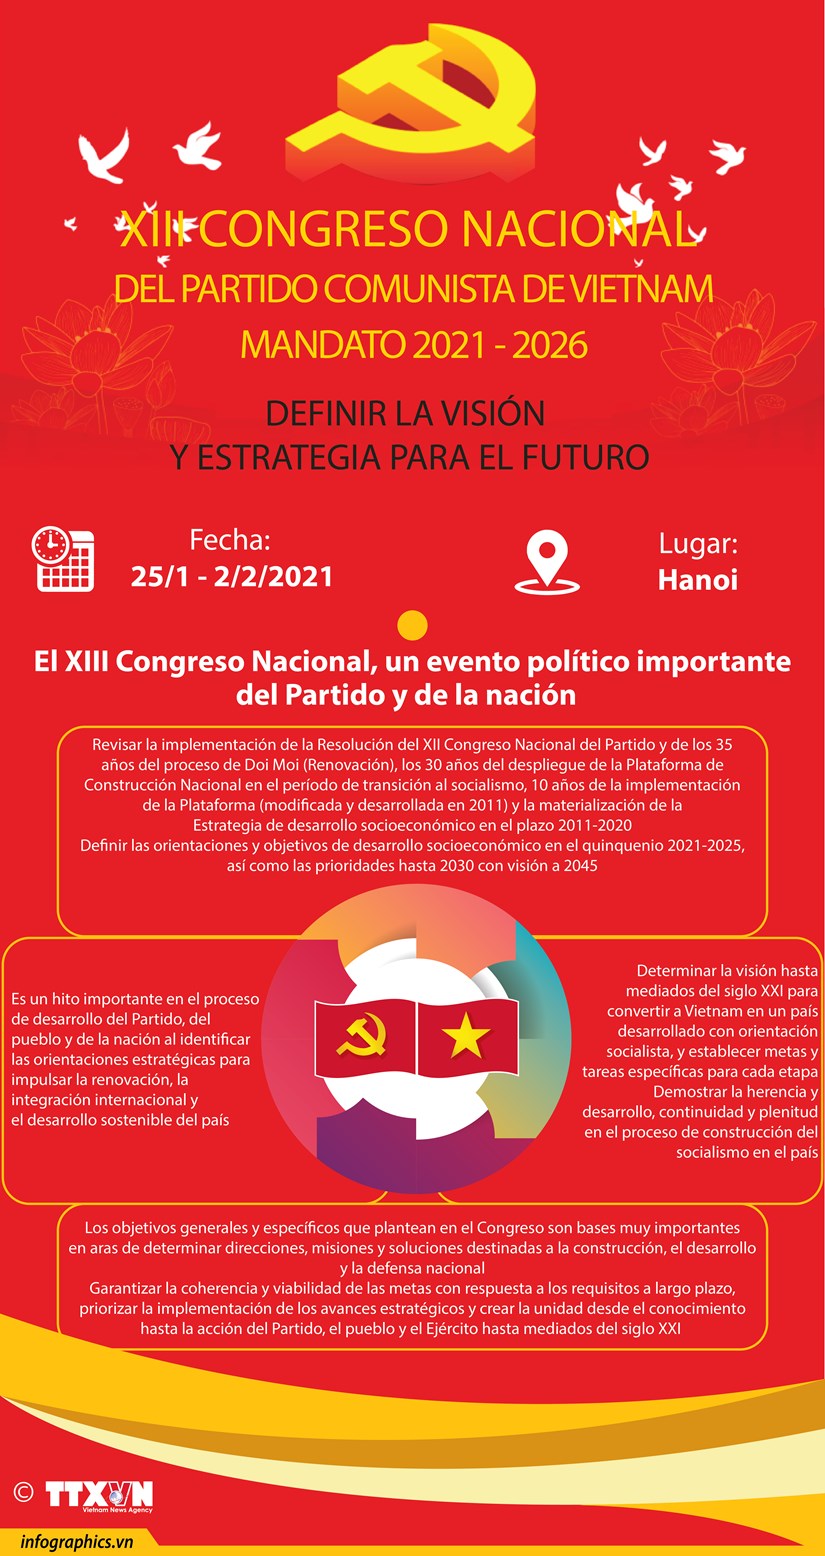 XIII Congreso Nacional del Partido Comunista de Vietnam: Definir la vision y estrategia para el futuro hinh anh 1